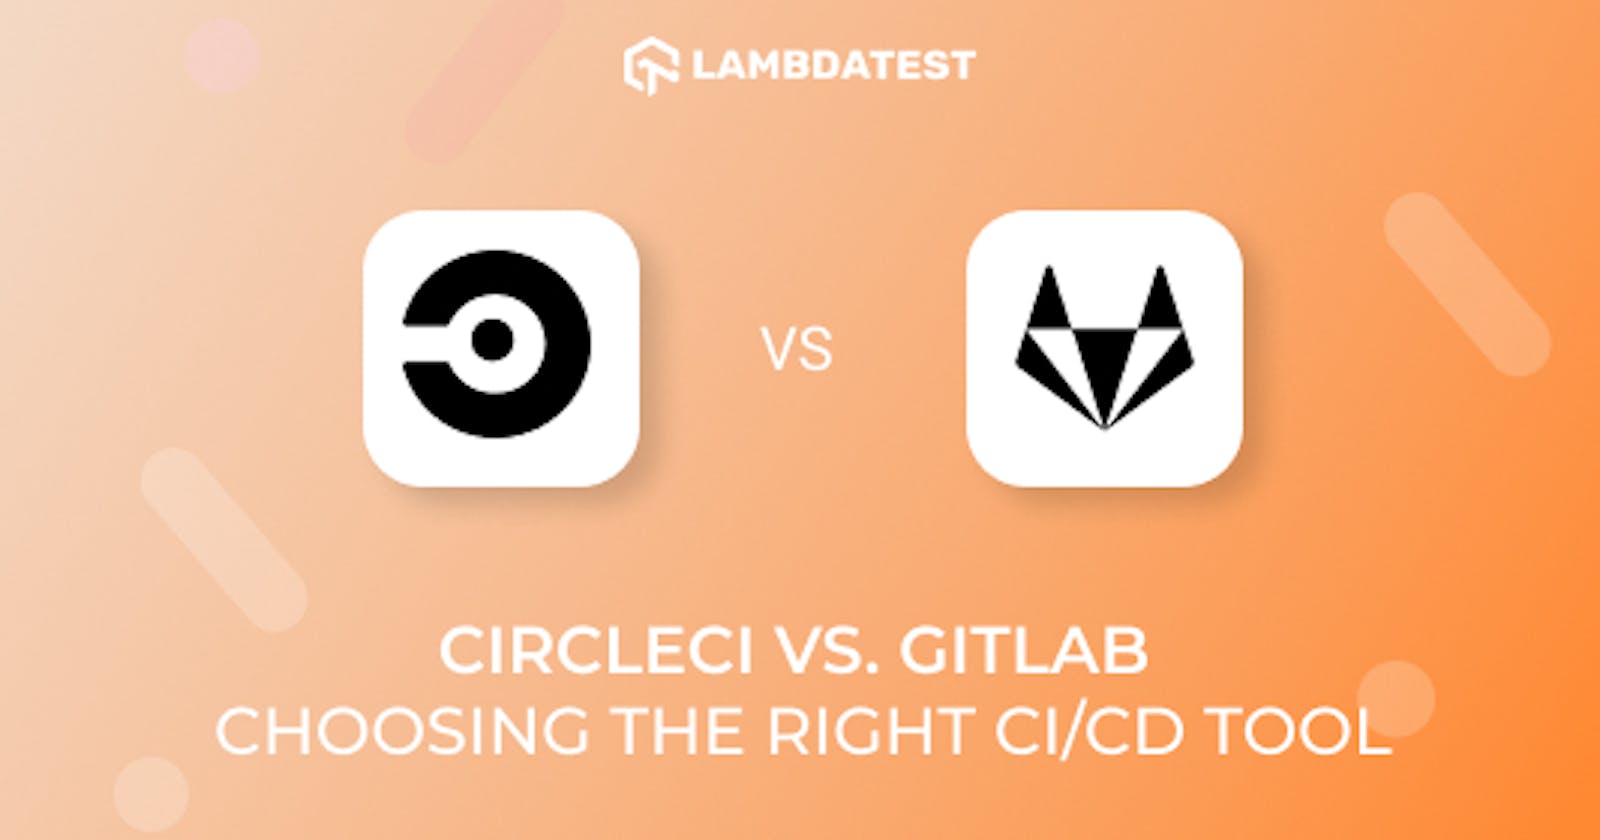 CircleCI Vs. GitLab: Choosing The Right CI/CD Tool